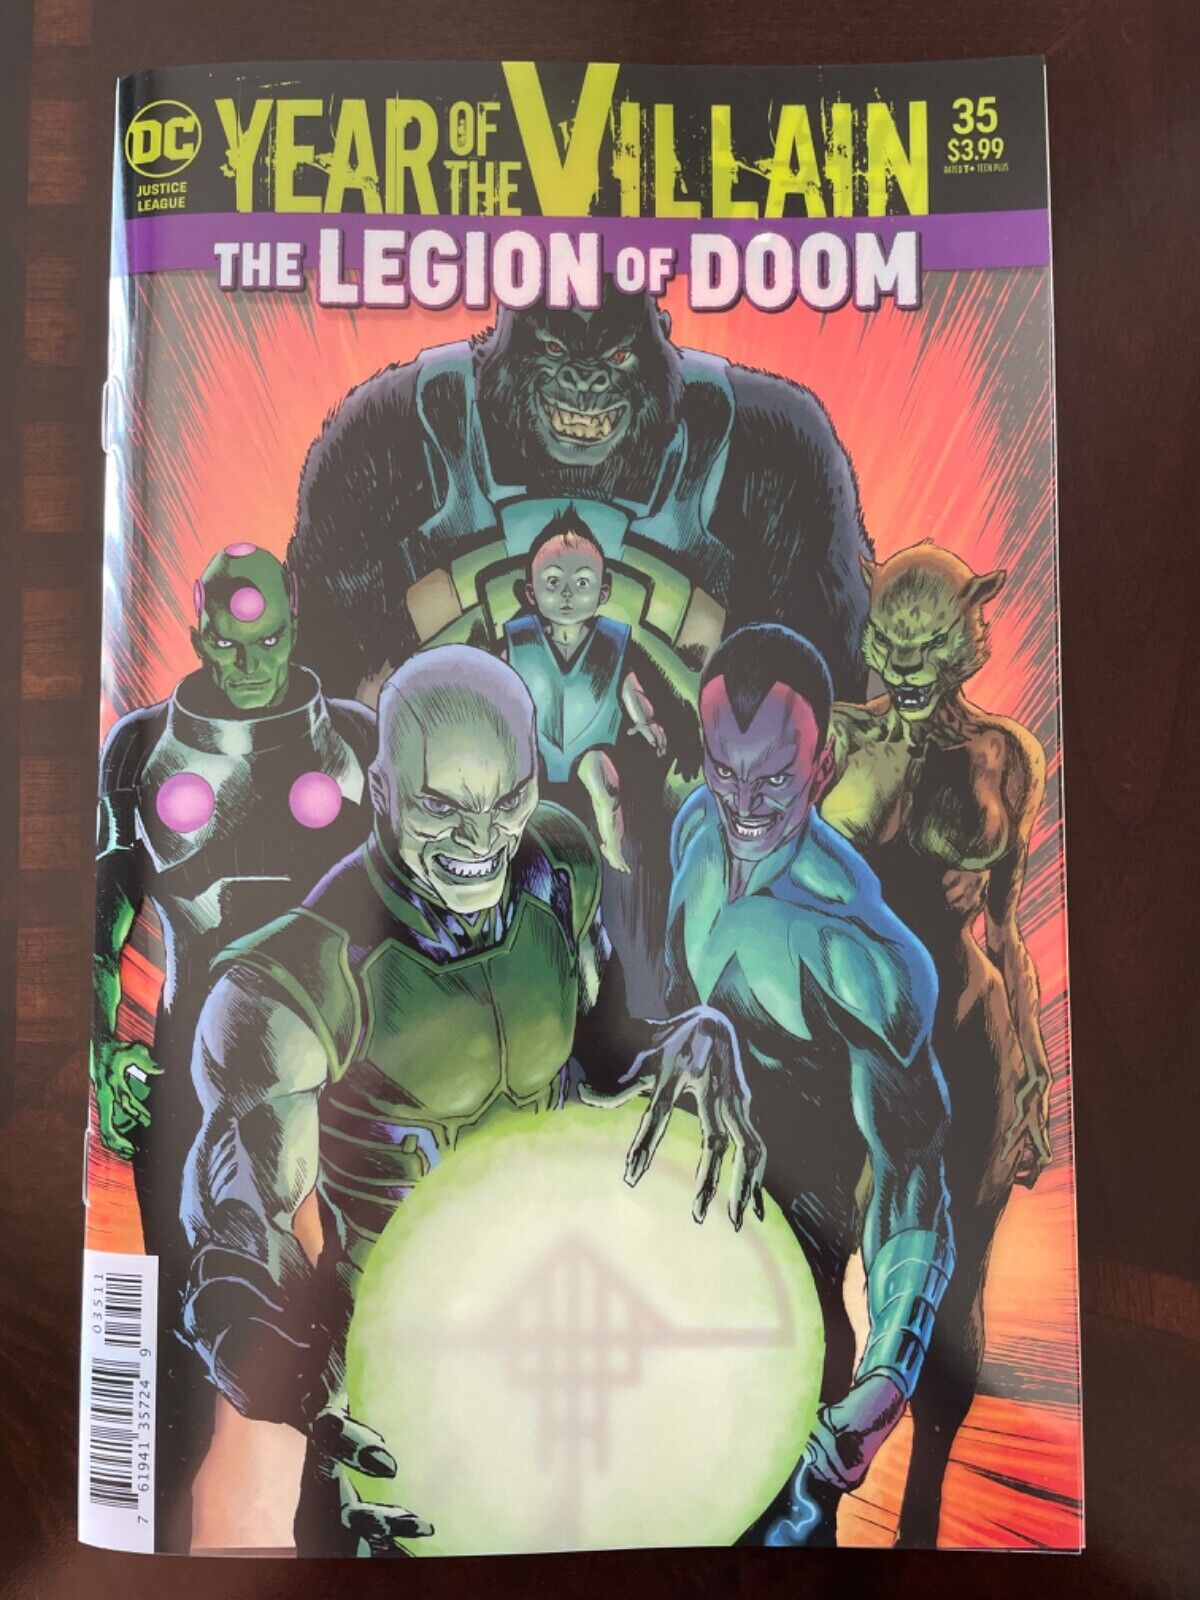 Justice League #35 Vol. 4 (DC, 2020) Rafael Albuquerque Acetate Cover, NM